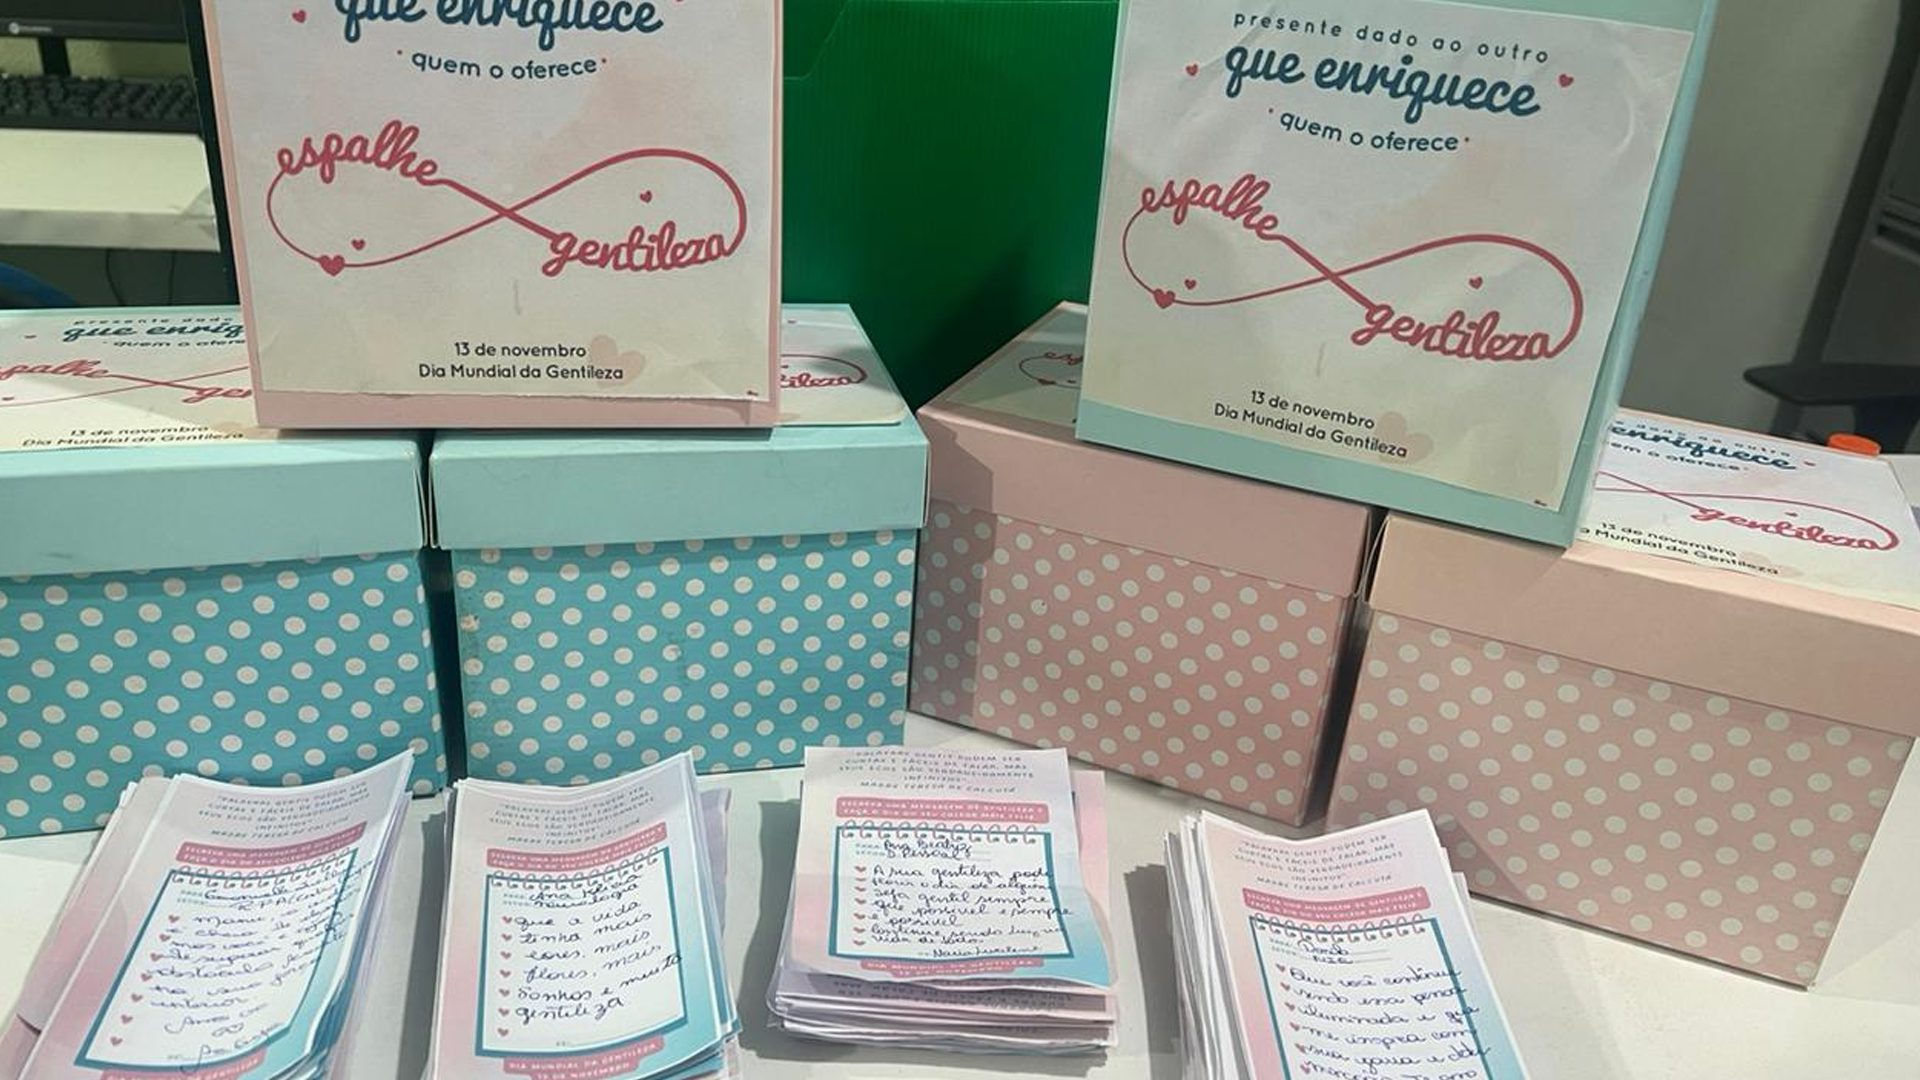 Cartões com mensagens de afeto e atenção dos colaboradores foram distribuídos nos corredores do hospital